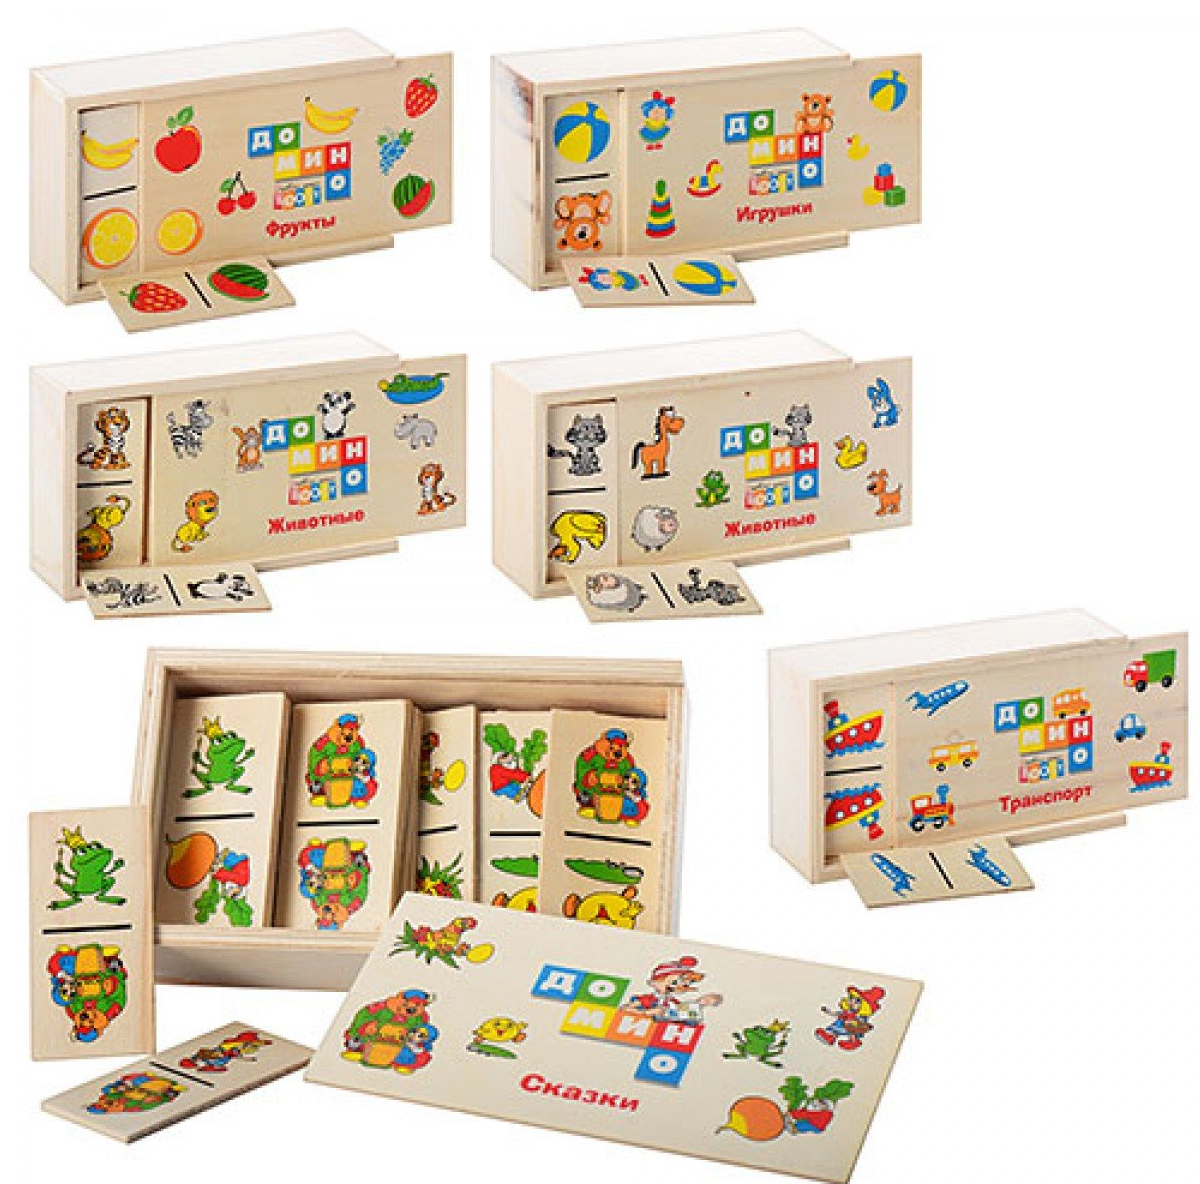 Дитяче доміно, дерев'яне доміно для дітей, дерев'яне доміно з картинками MD 0017, 6 різновидів